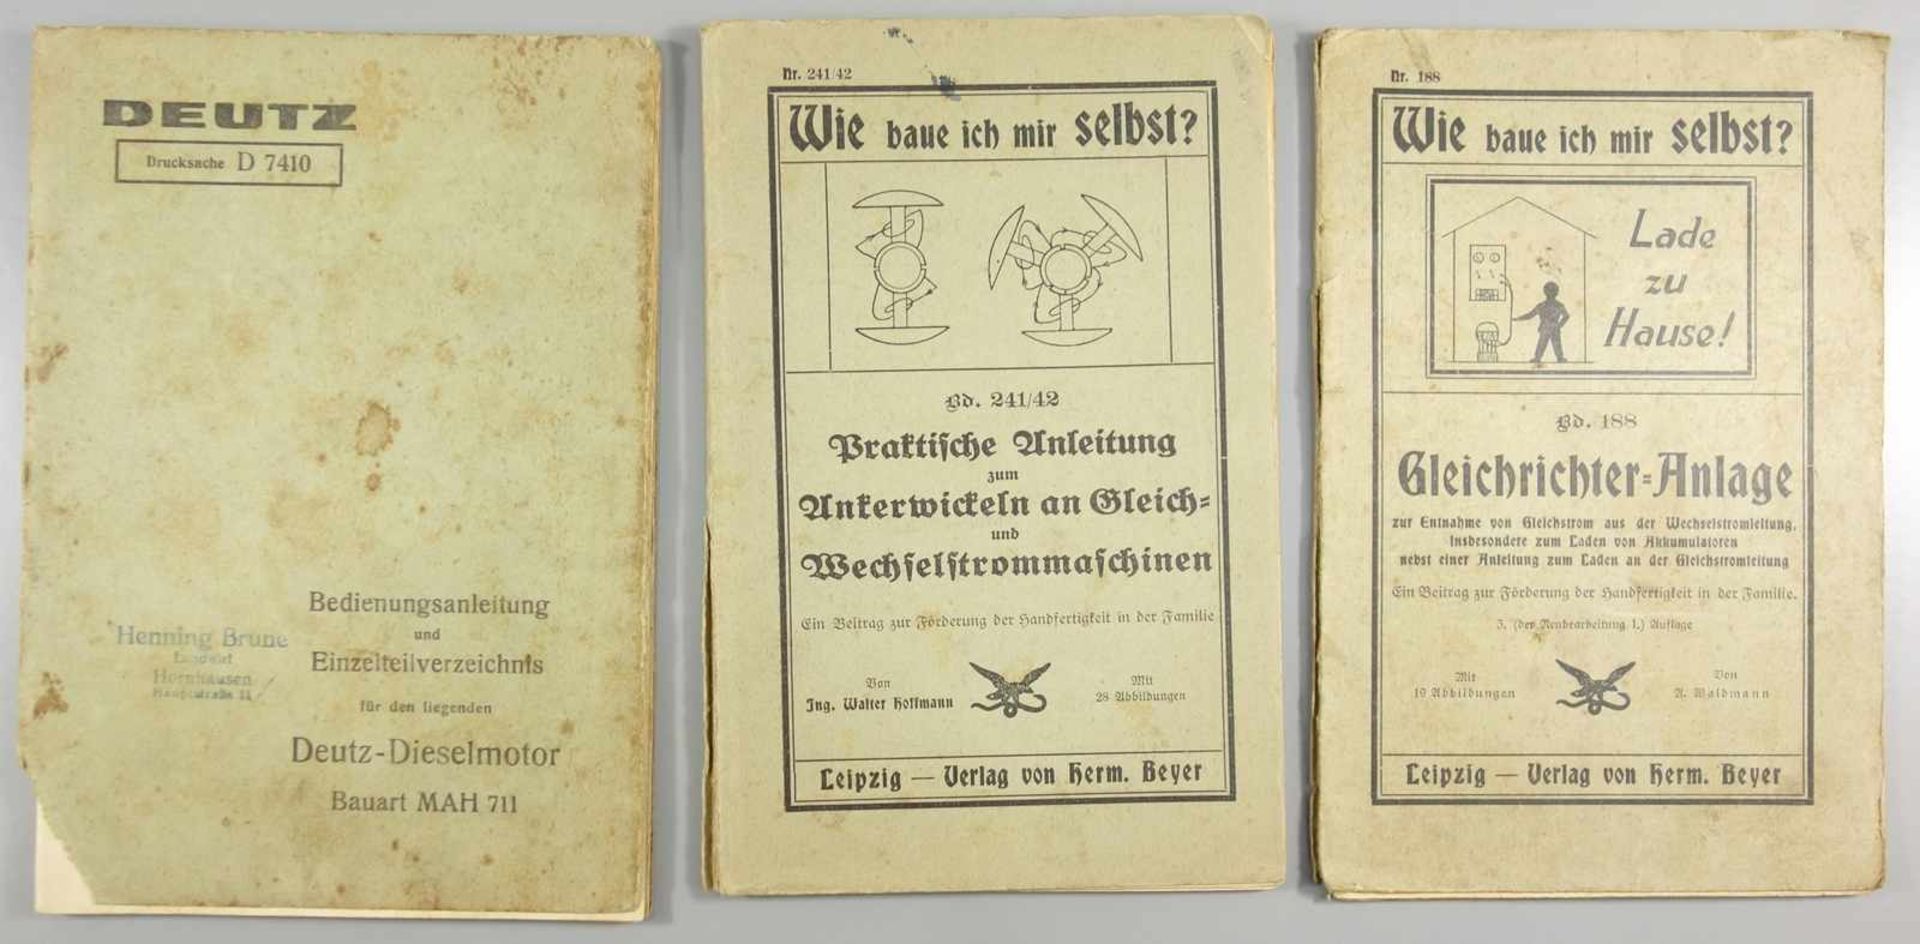 3 technische Hefte, um 1920/30; aus der Reihe "Wie baue ich mir selbst?" Band 241/42 "Praktische